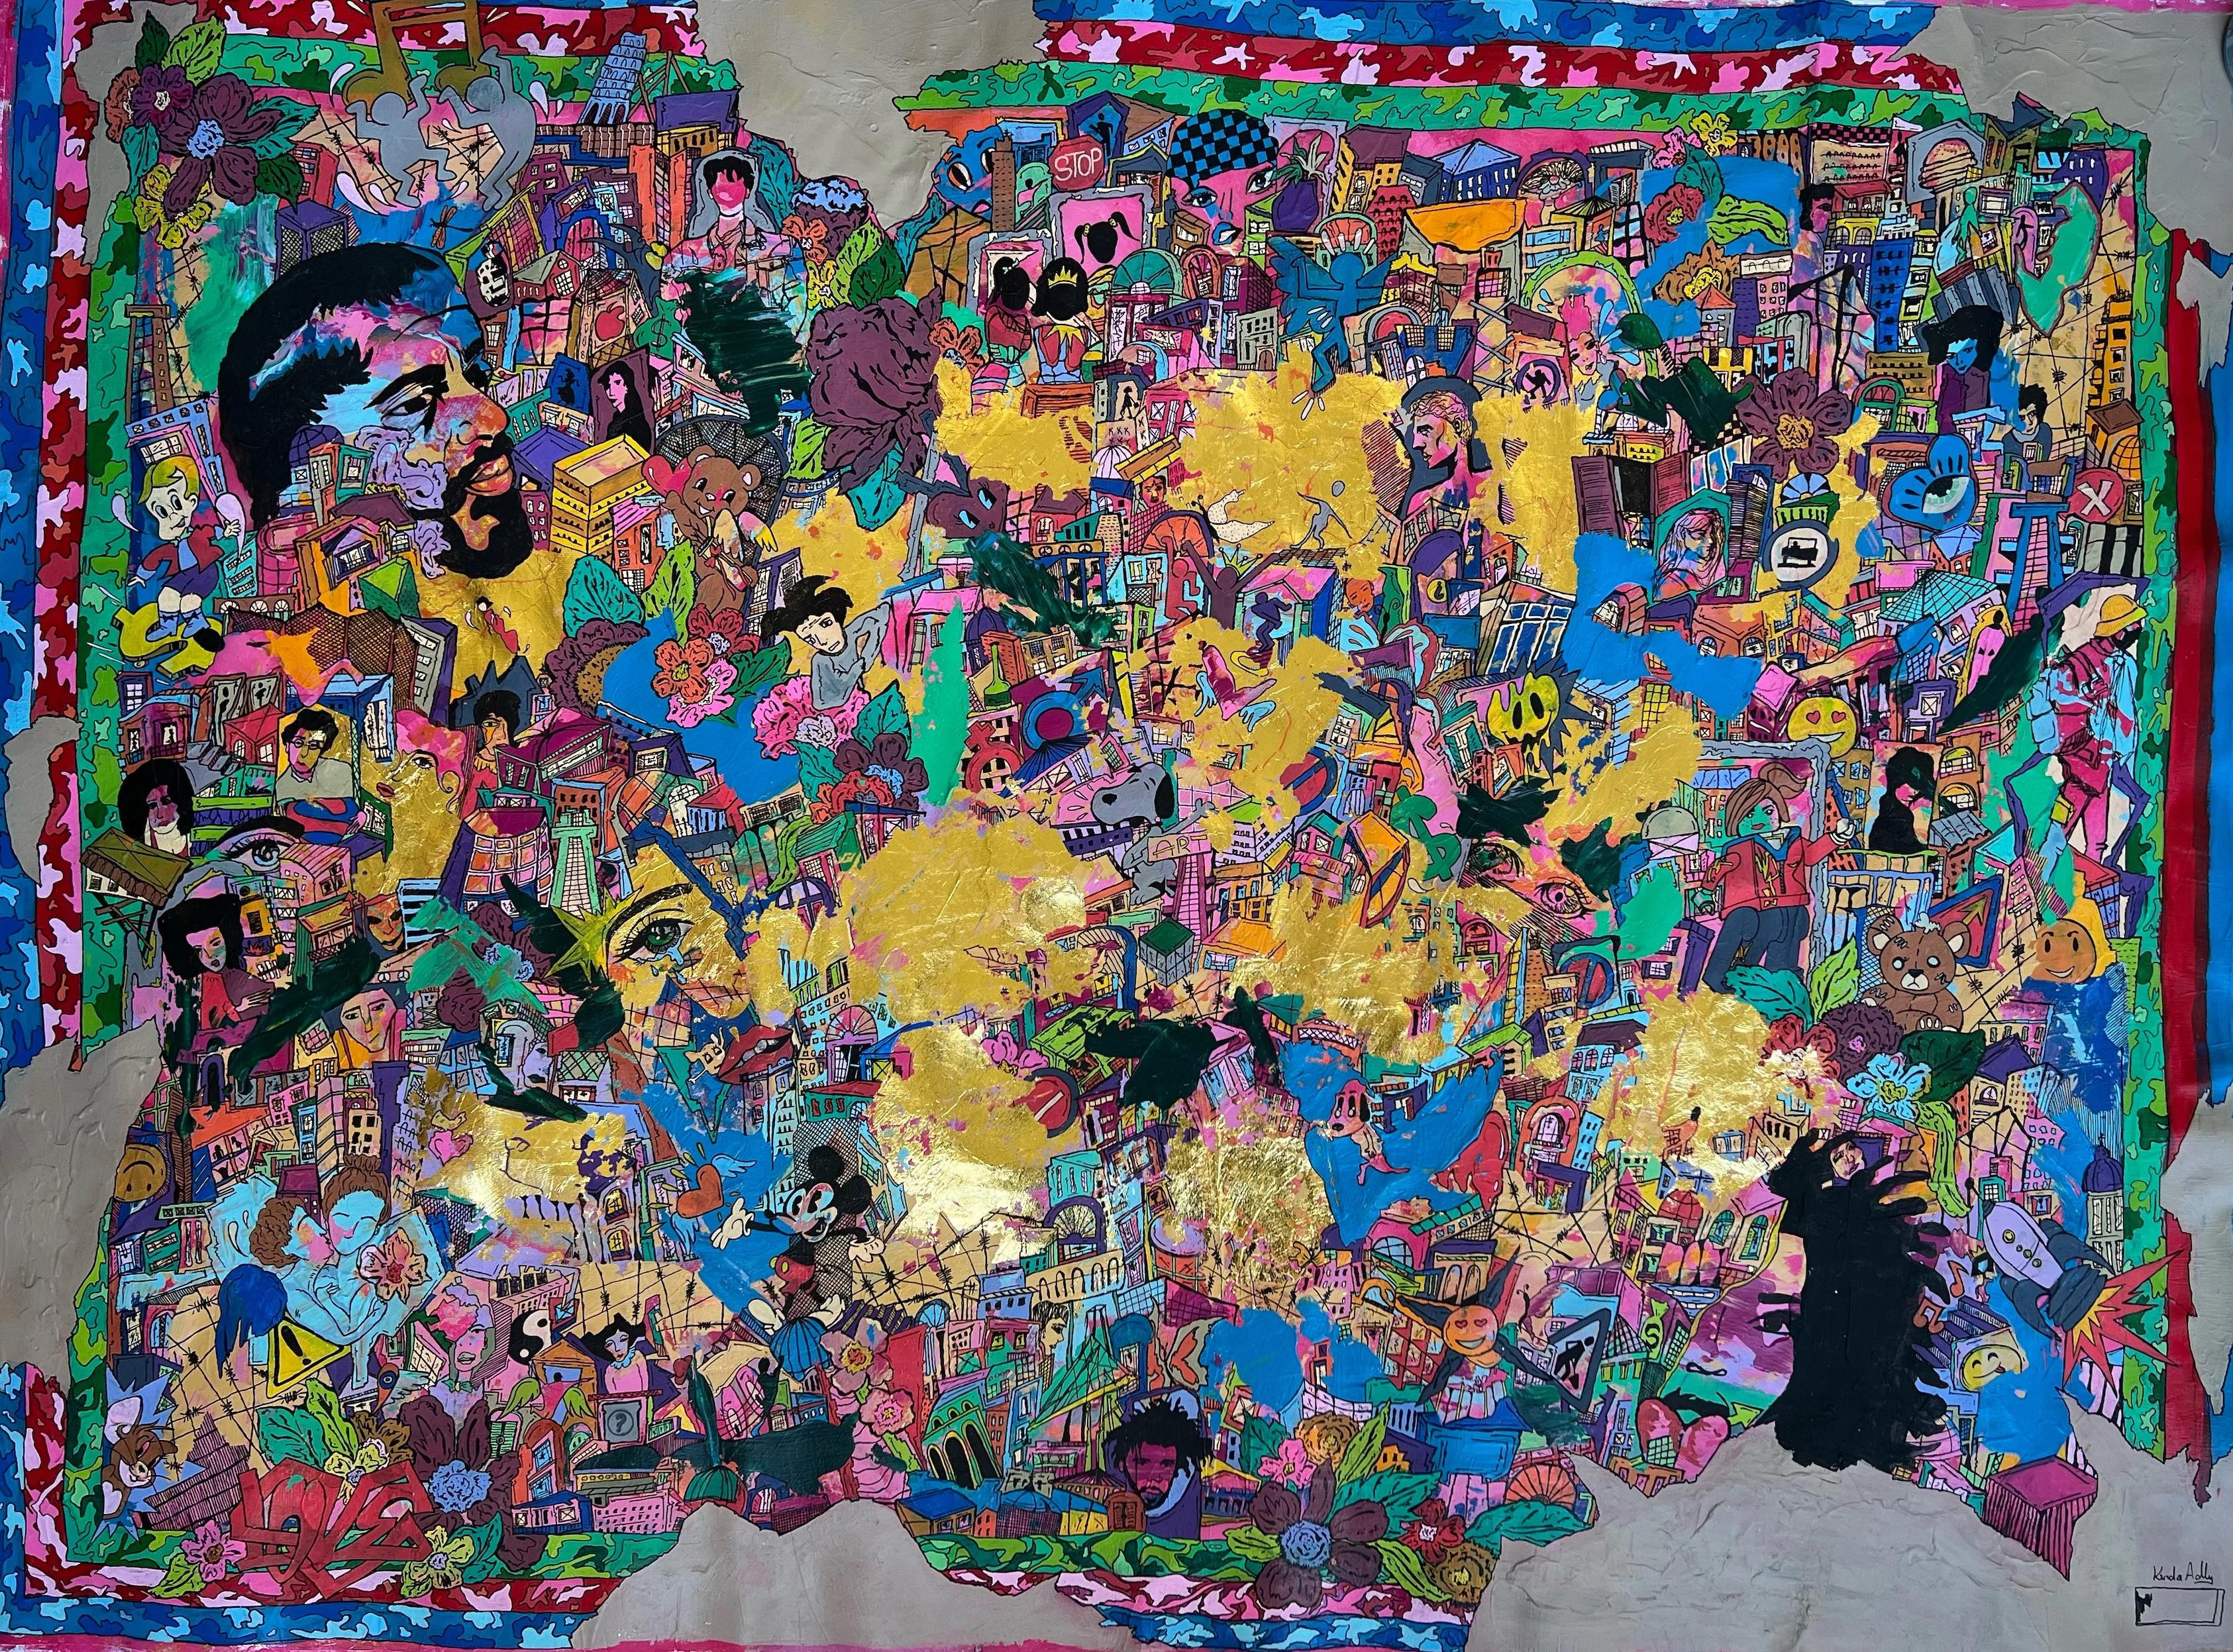 "Gold Frenzy" Acryl & Tinte Gemälde 41" x 53" Zoll von Kinda Adly

* Aufgrund der Politik des Kulturministeriums kann die Bearbeitungszeit (Papierkram) bis zu 2-5 Wochen dauern. 

Kinda Adly, 1989 in Ägypten geboren, ist ein Autodidakt. Sie wuchs in